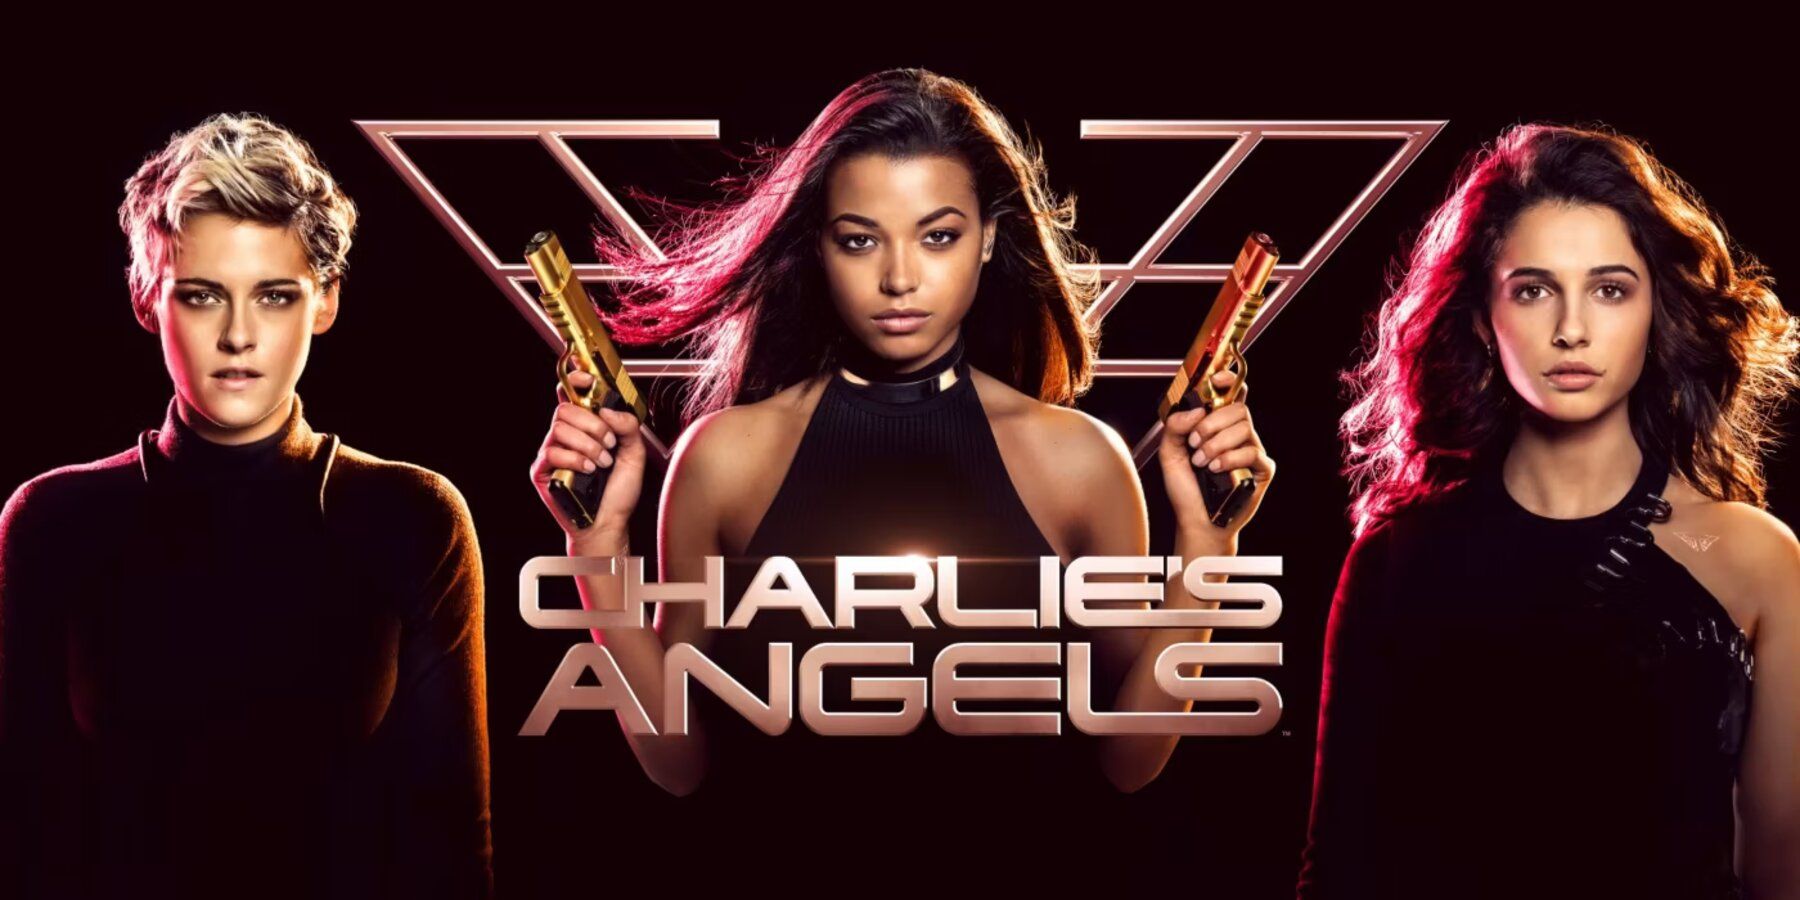 Charlie's Angels Elizabeth Banks